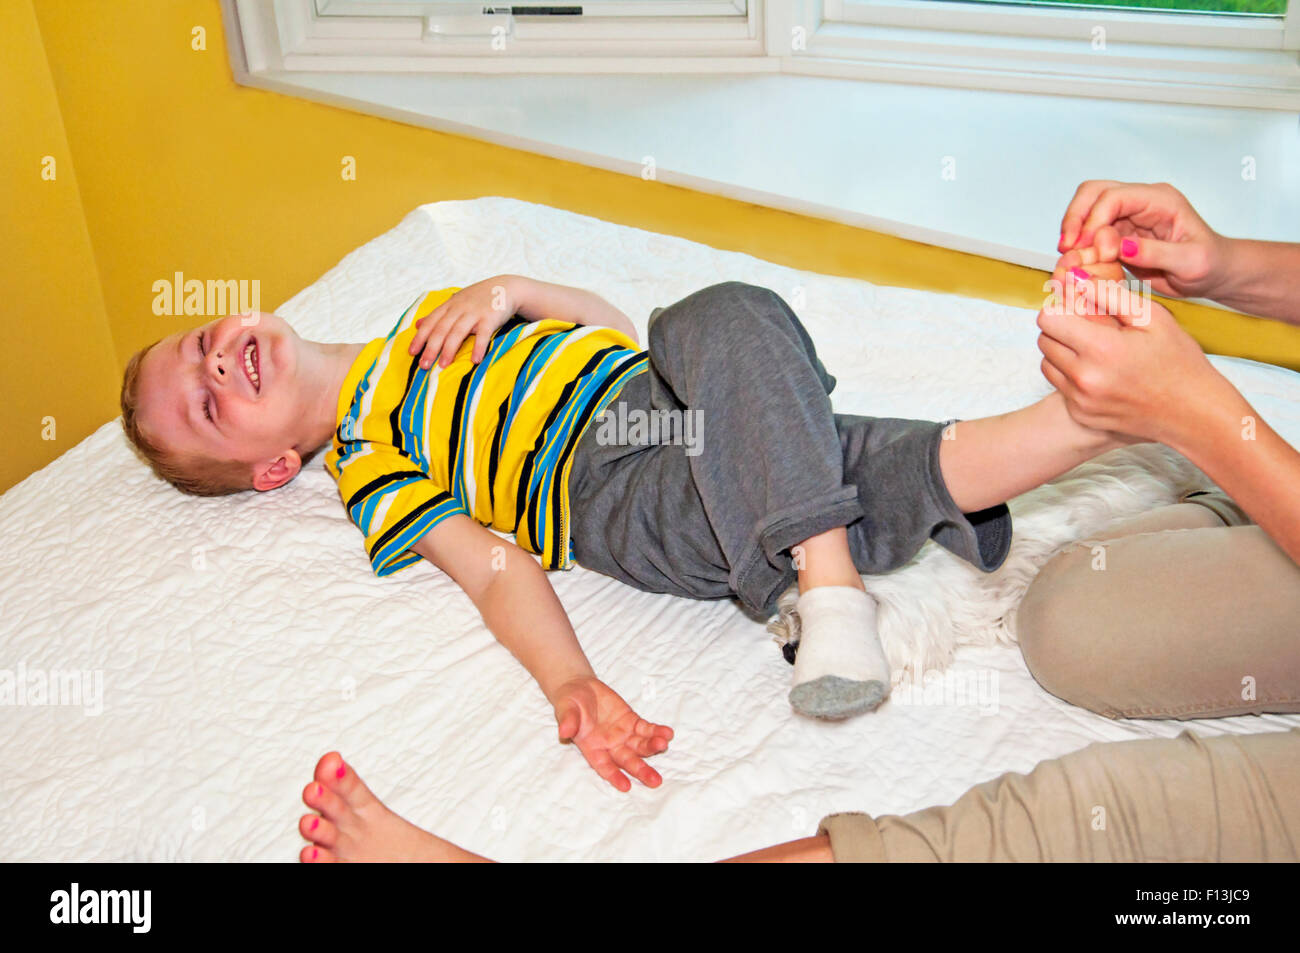 Lit enfant jette sur rire lors de l'obtention de son pied chatouillé Banque D'Images